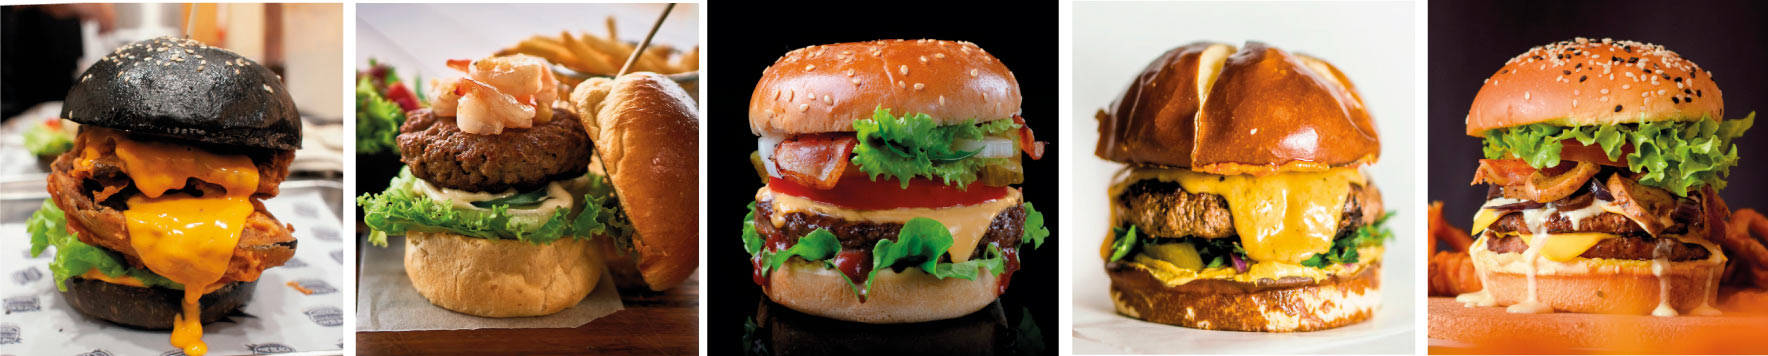 Dia Internacional de l'hamburguesa - varietats